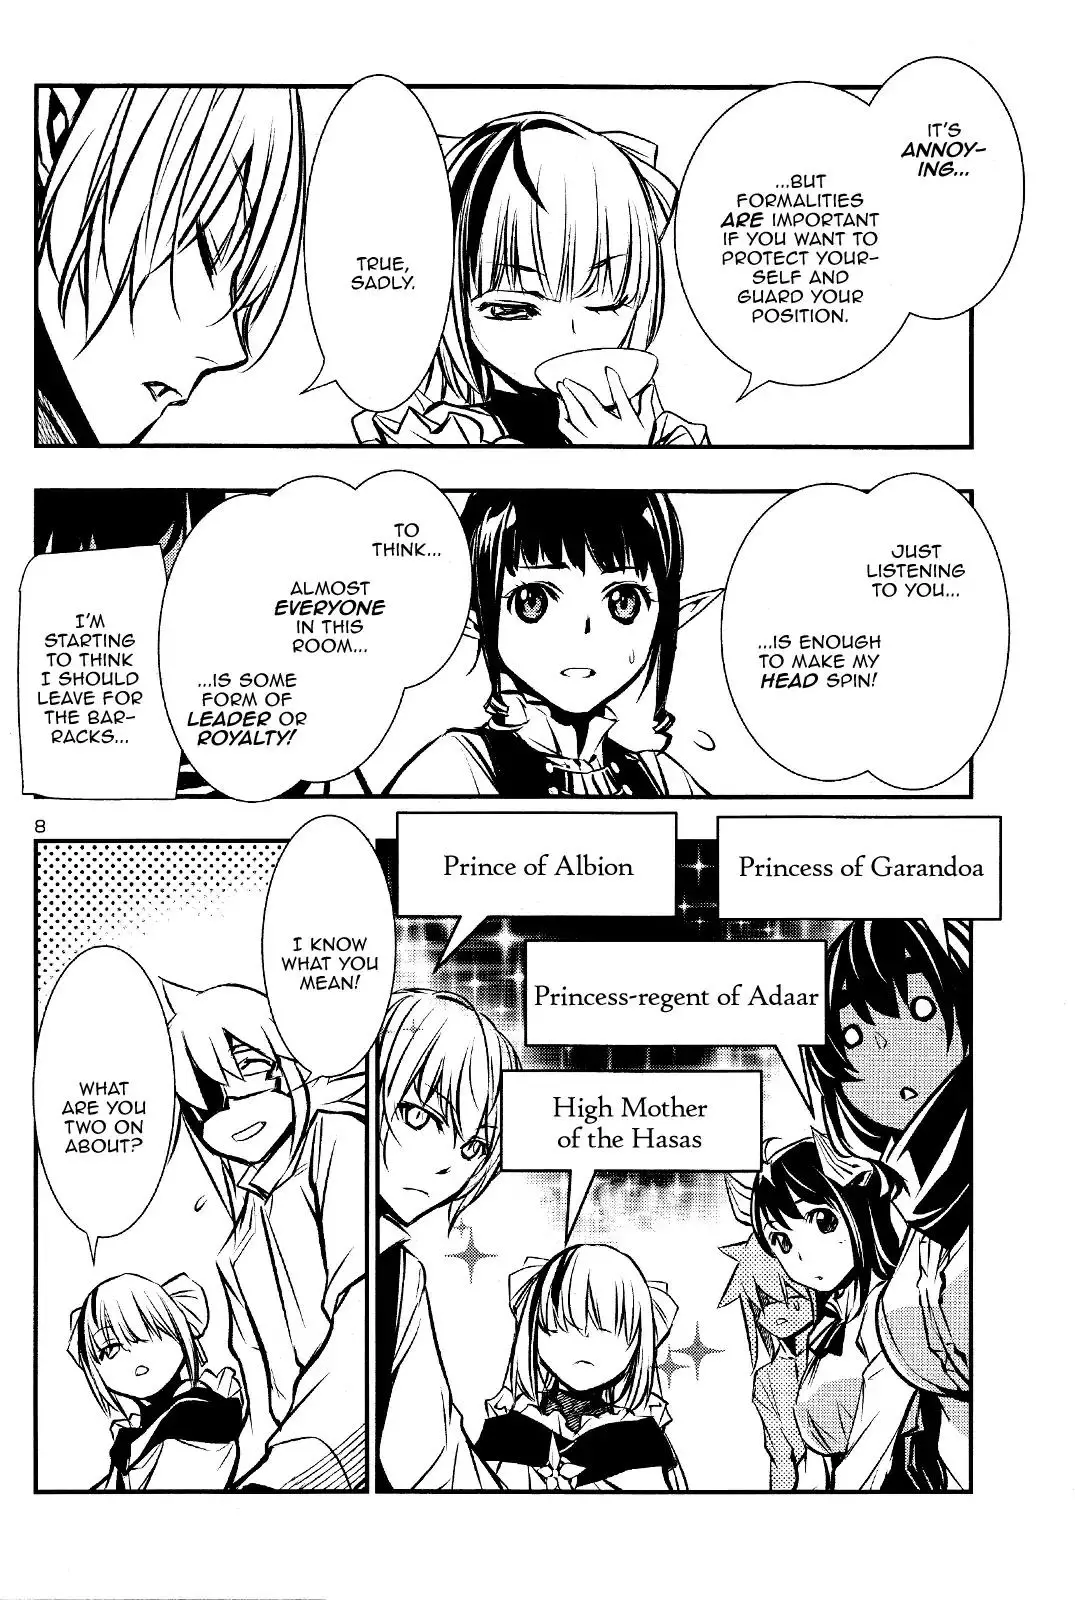 Shinju no Nectar - 29 page 8